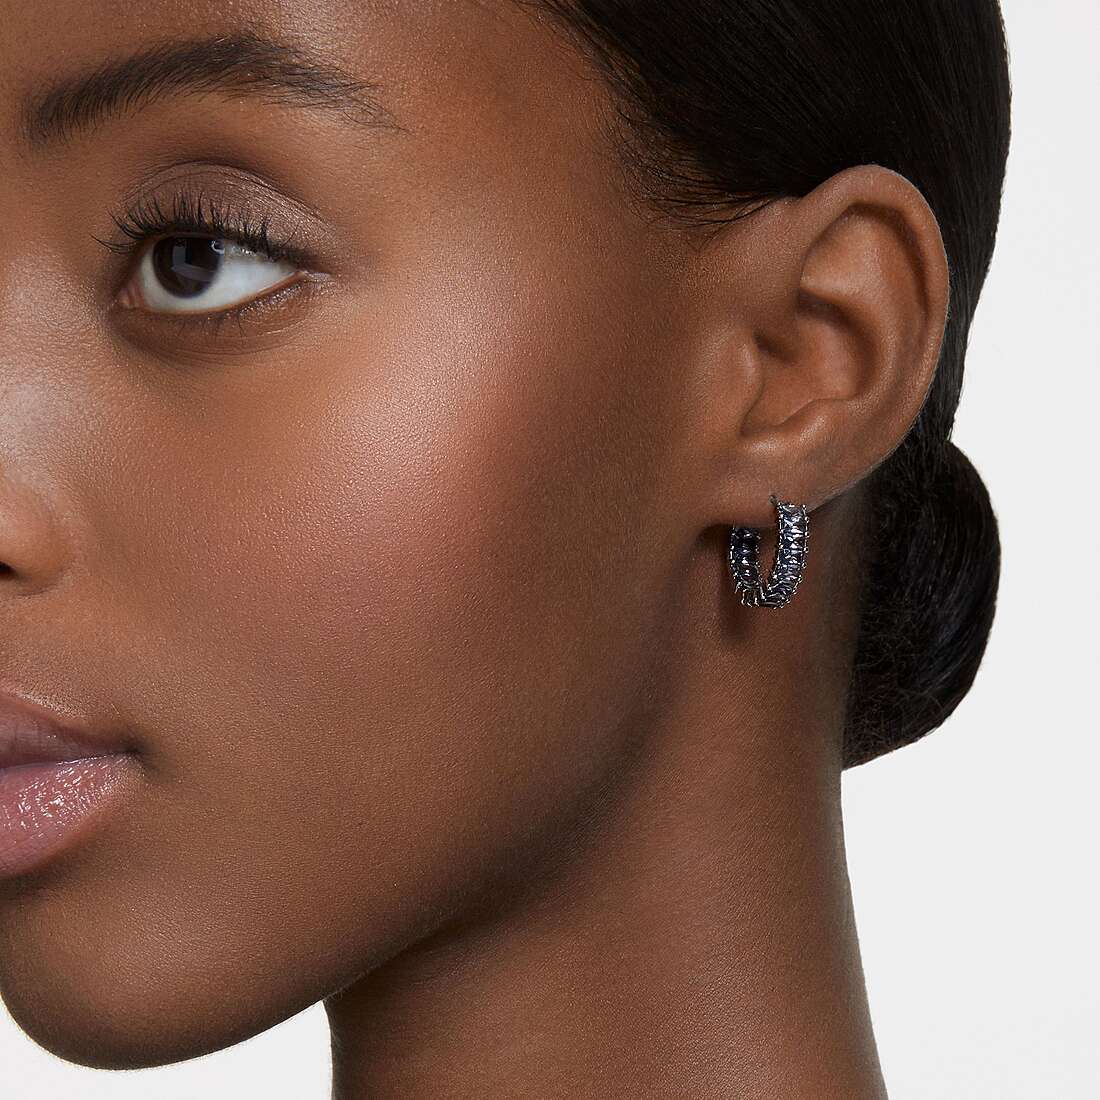 Swarovski earrings woman 5658650 wearing